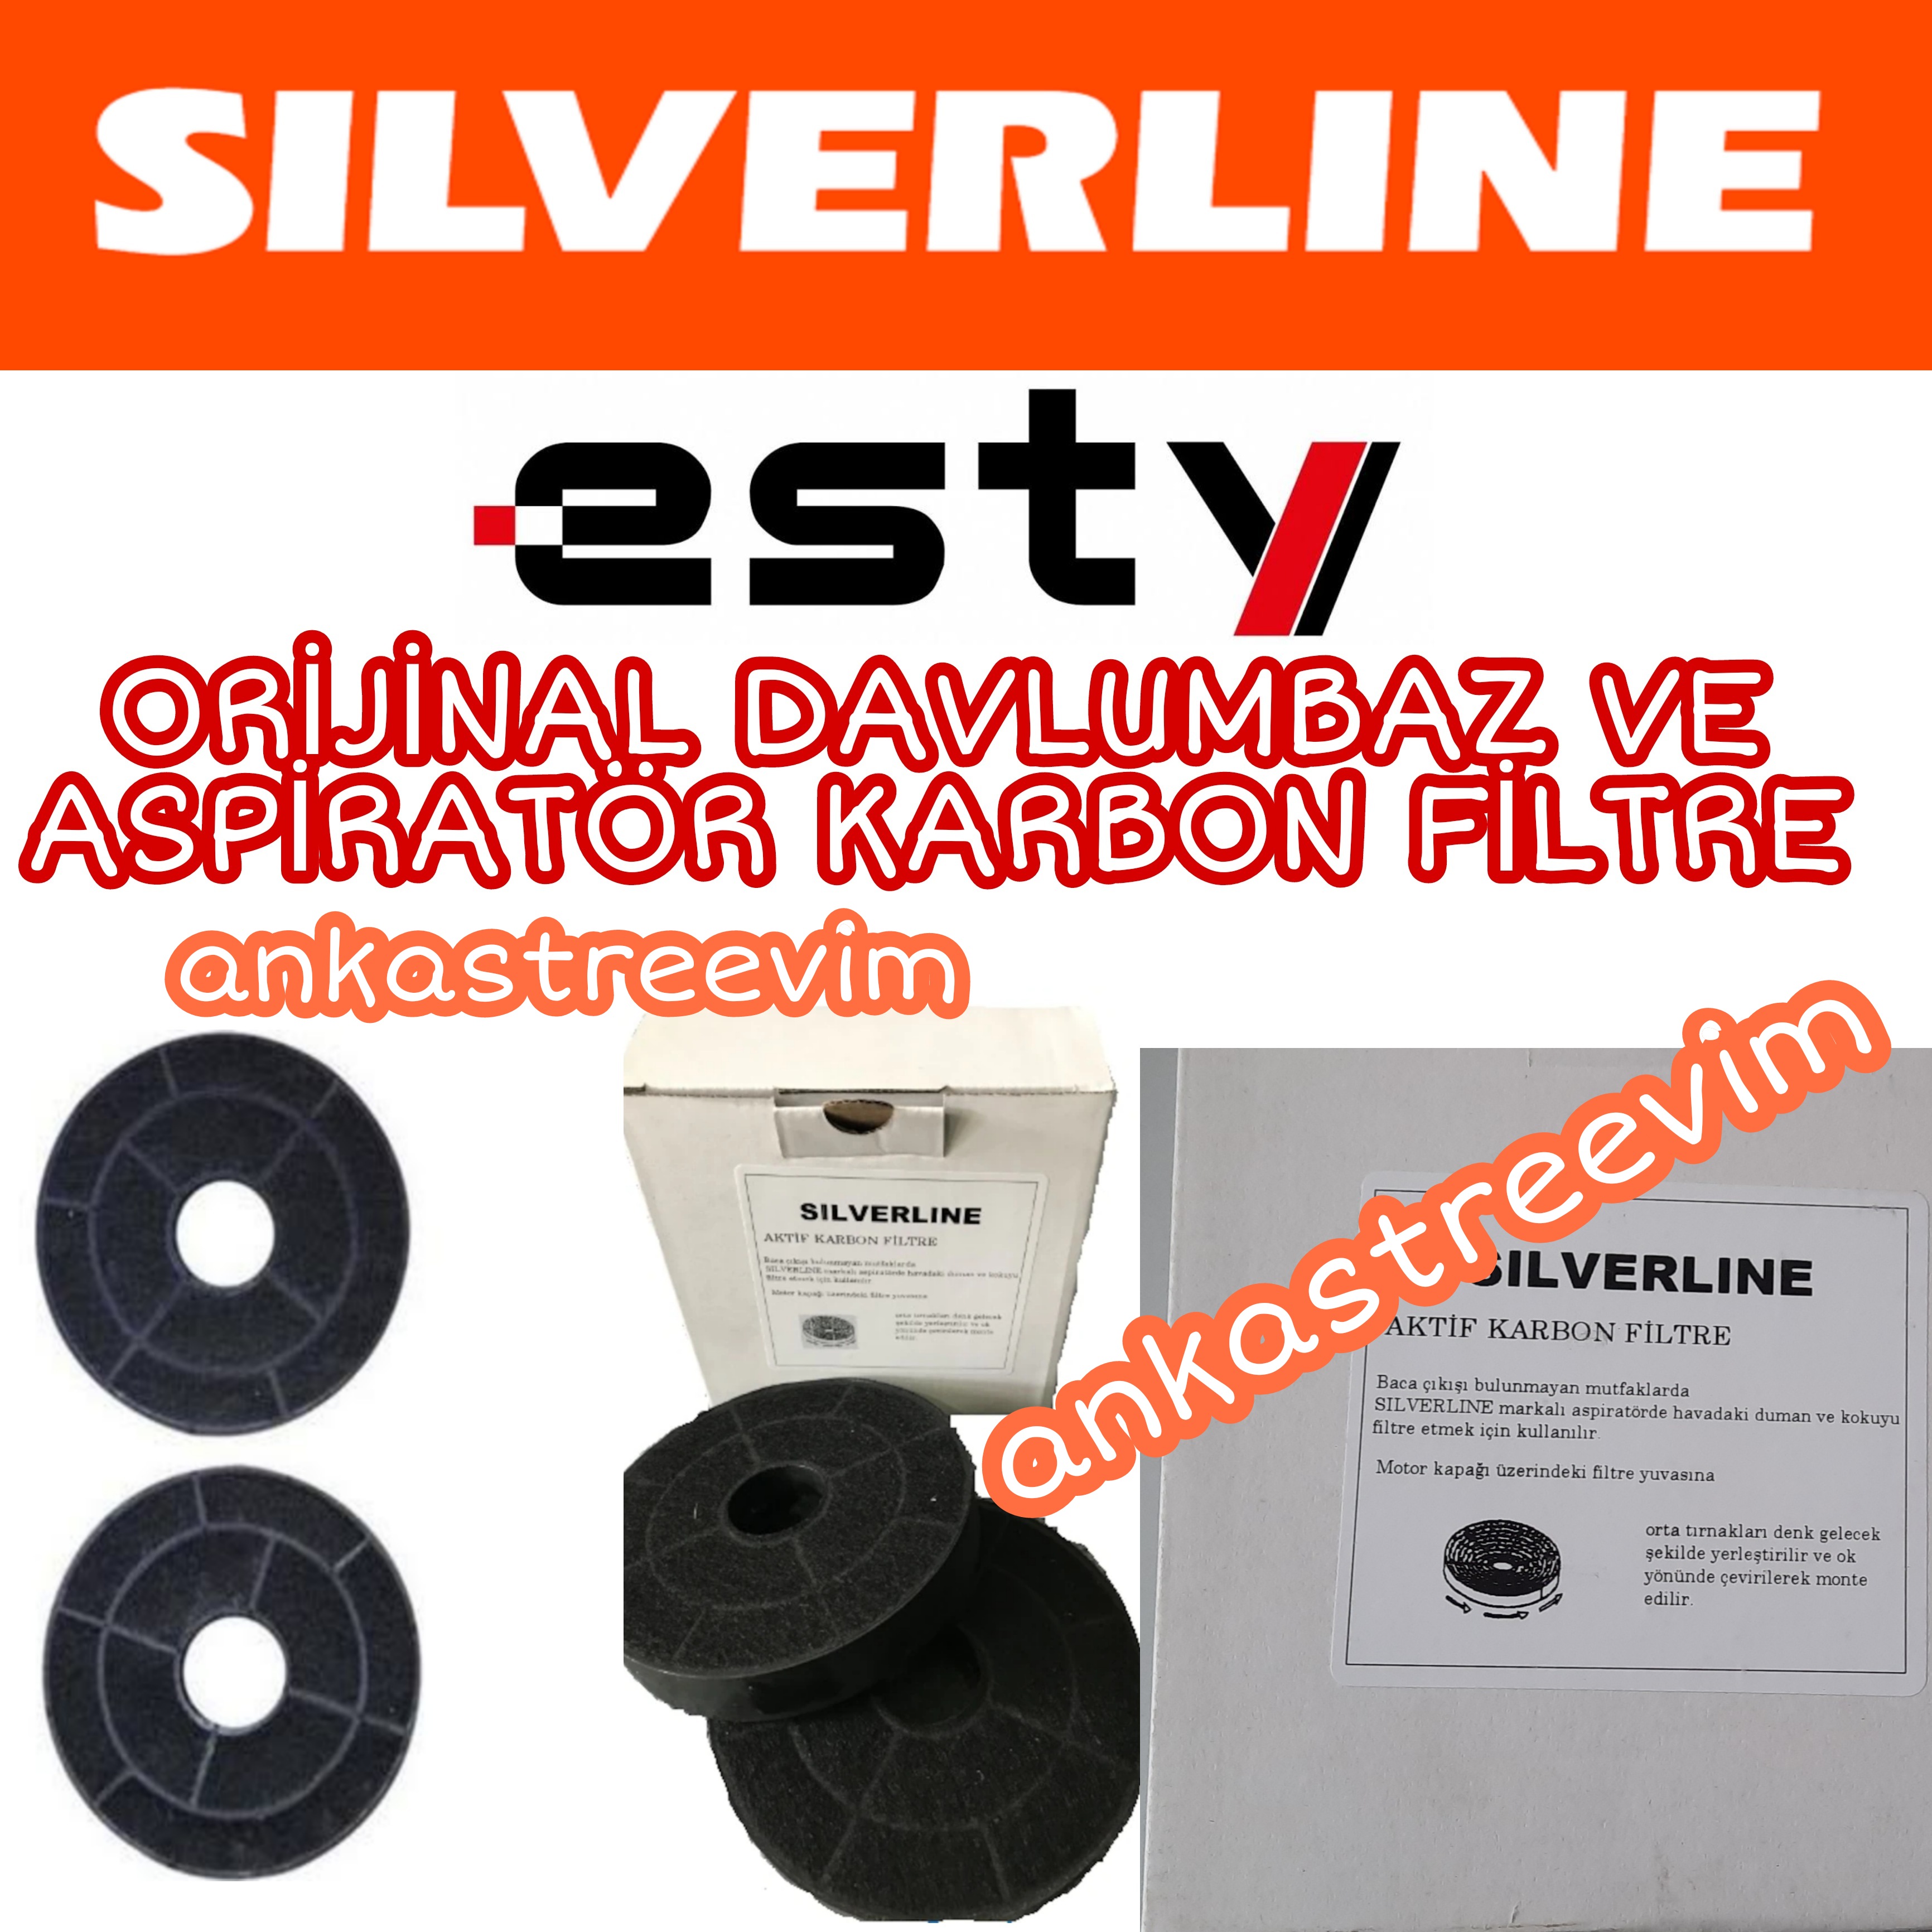 Silverline Esty  Orijinal Aktif Büyük Karbon Filtre 15 Cm